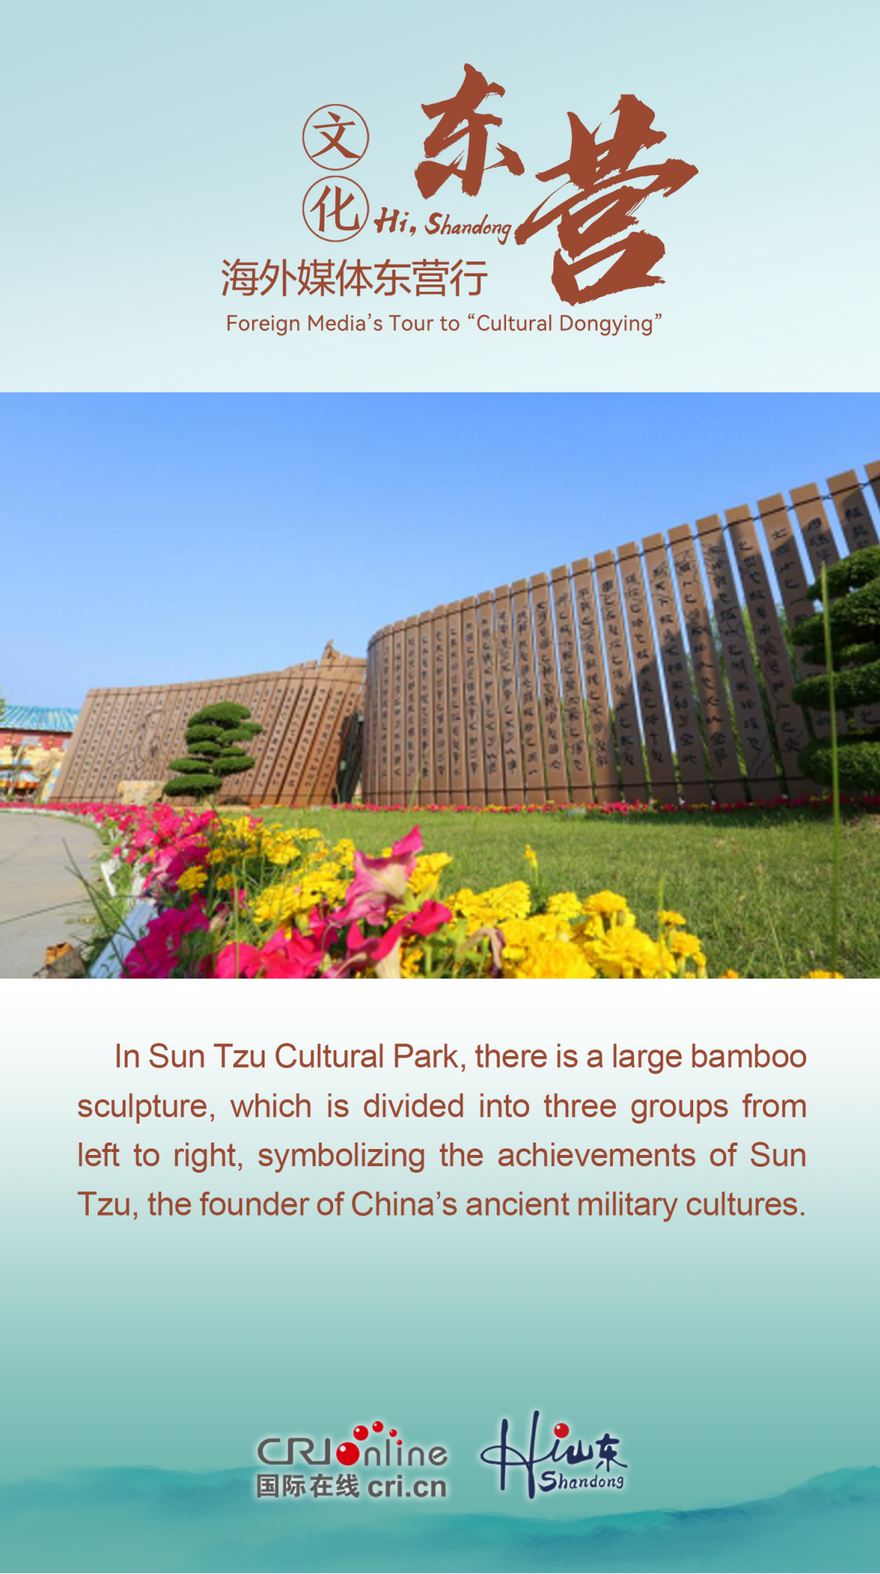 Explore the Ancient Military Culture at Sun Tzu Cultural Park